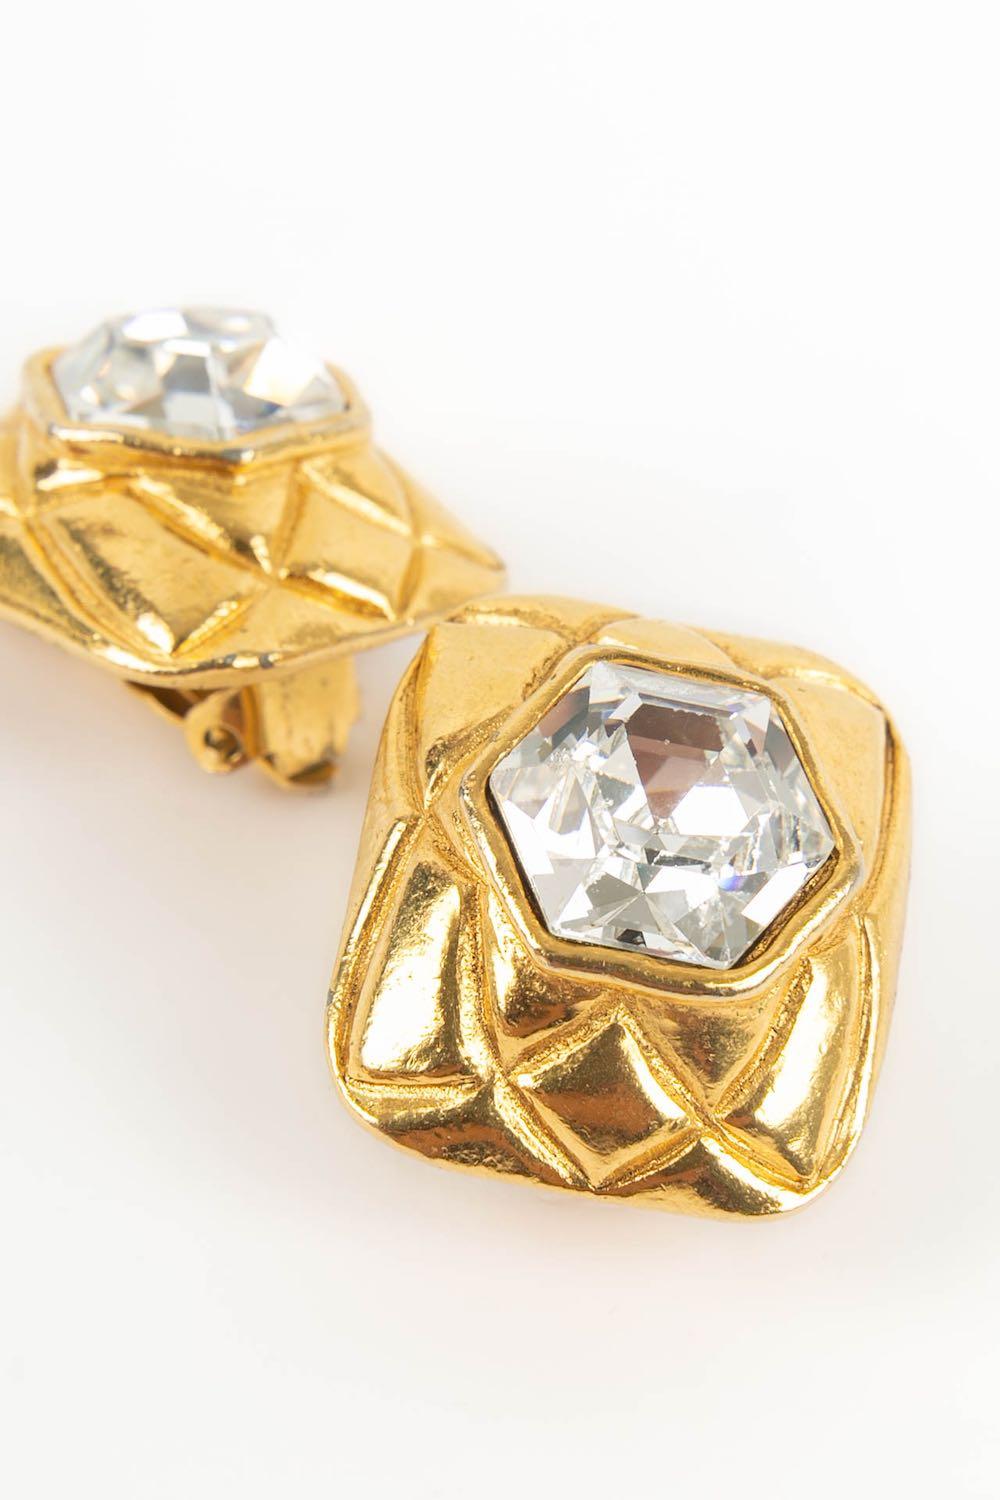 Chanel - (Made in France) Gesteppte Clip-Ohrringe aus goldfarbenem Metall und Strasssteinen.

Zusätzliche Informationen:
Abmessungen: 2,5 H cm
Zustand: Sehr guter Zustand
Verkäufer Ref Nummer: BOB67